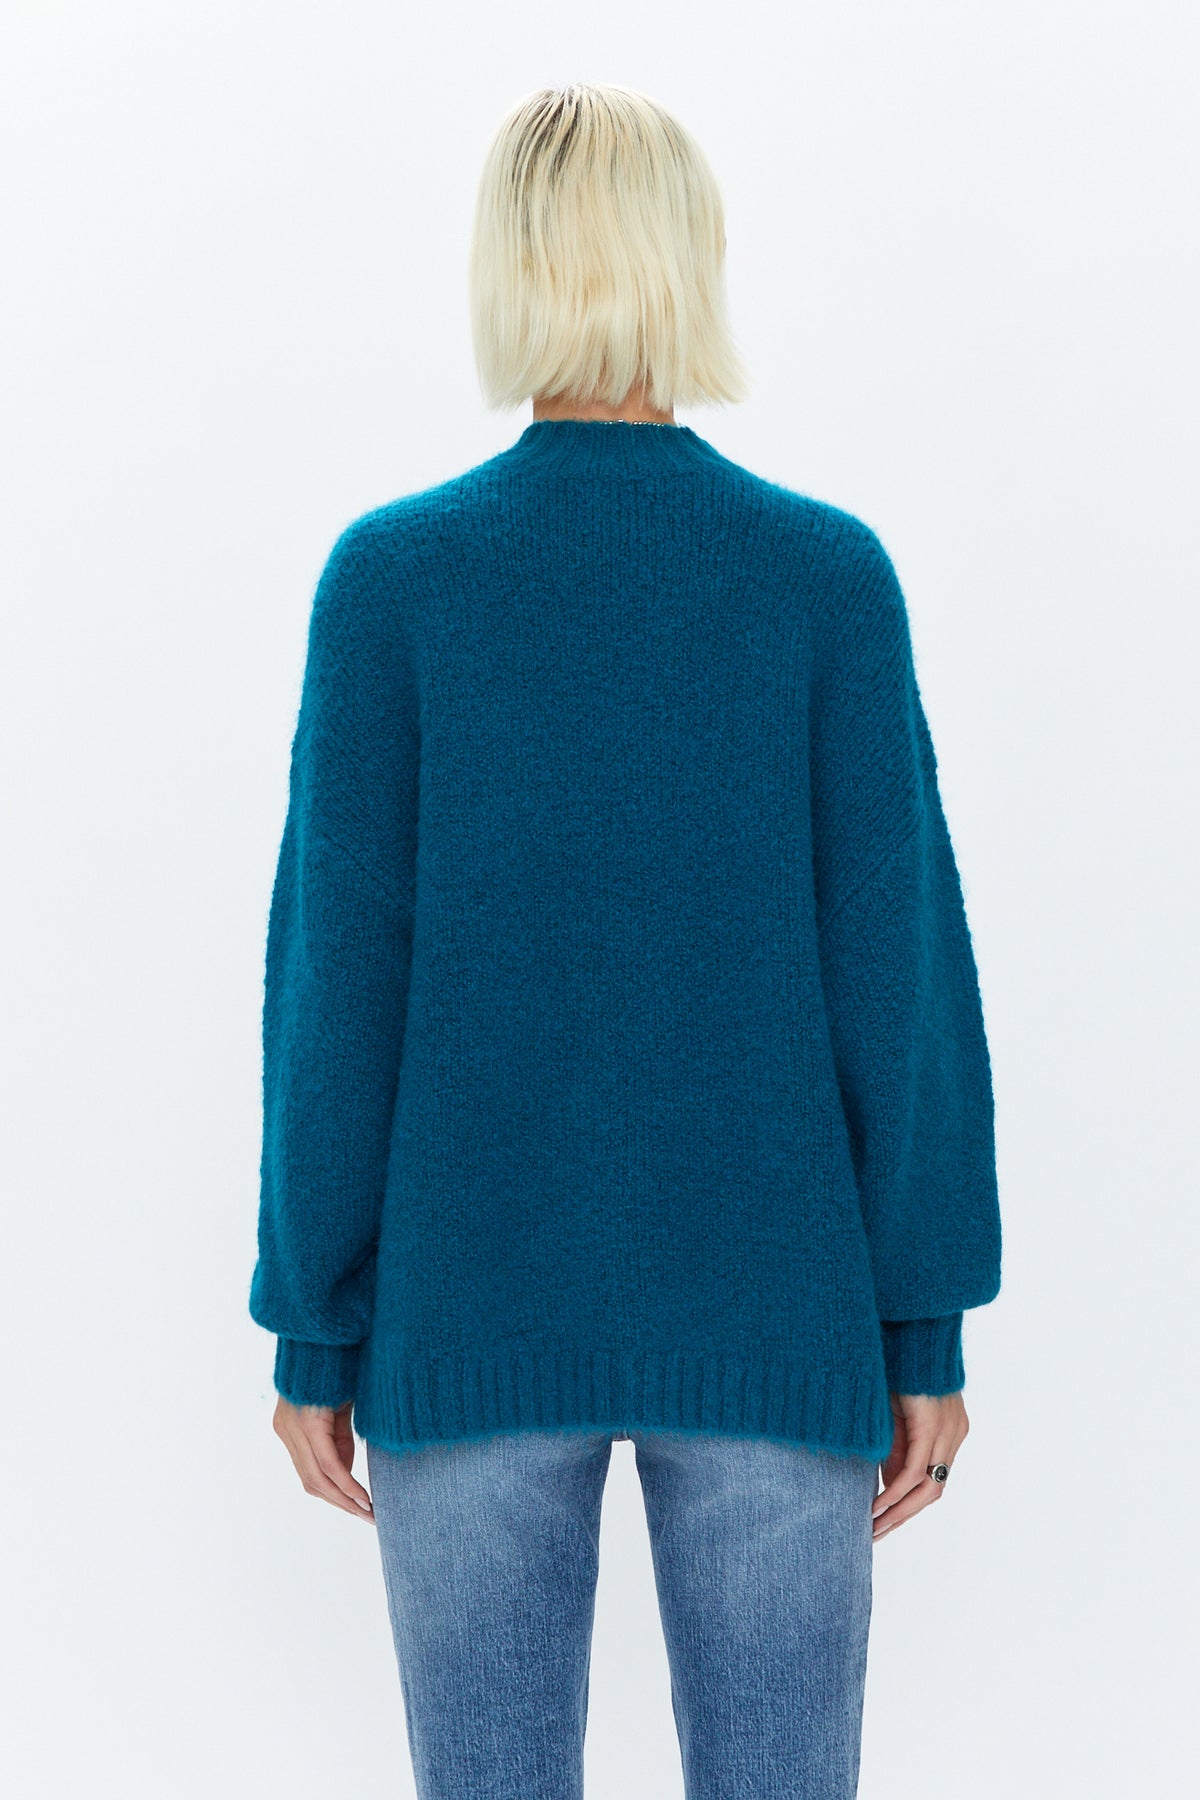 Carlen Mock Neck Sweater - Atlas